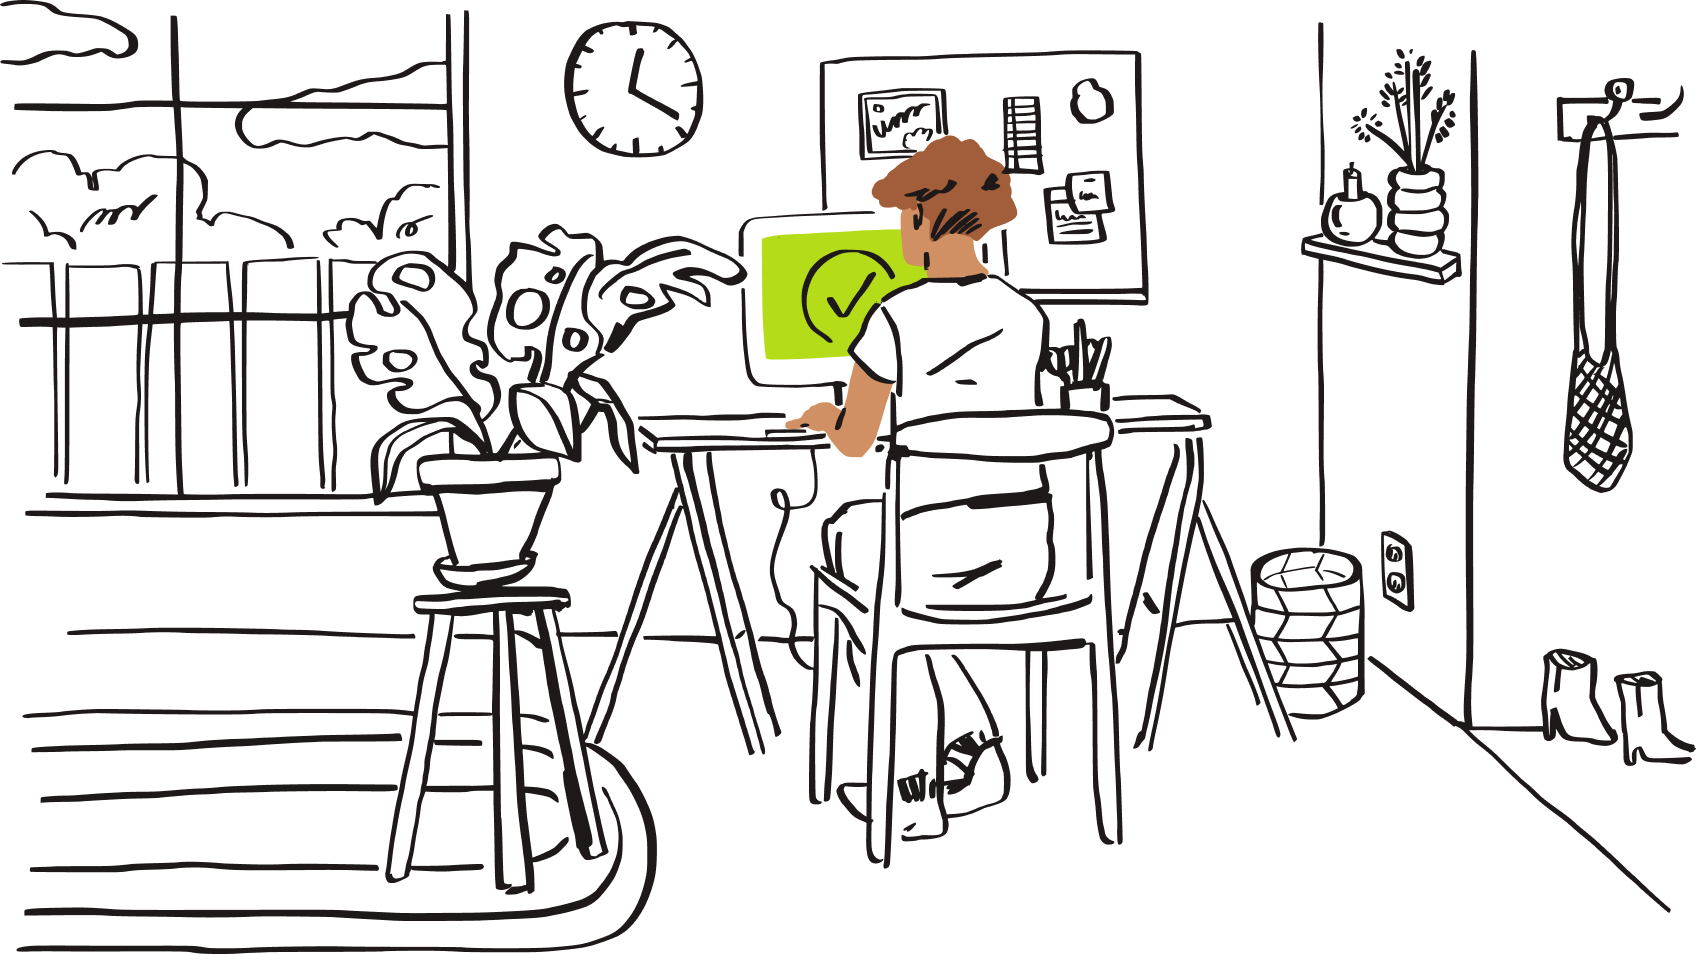 En illustration av en person som sitter vid en dator med en grön bock på skärmen.